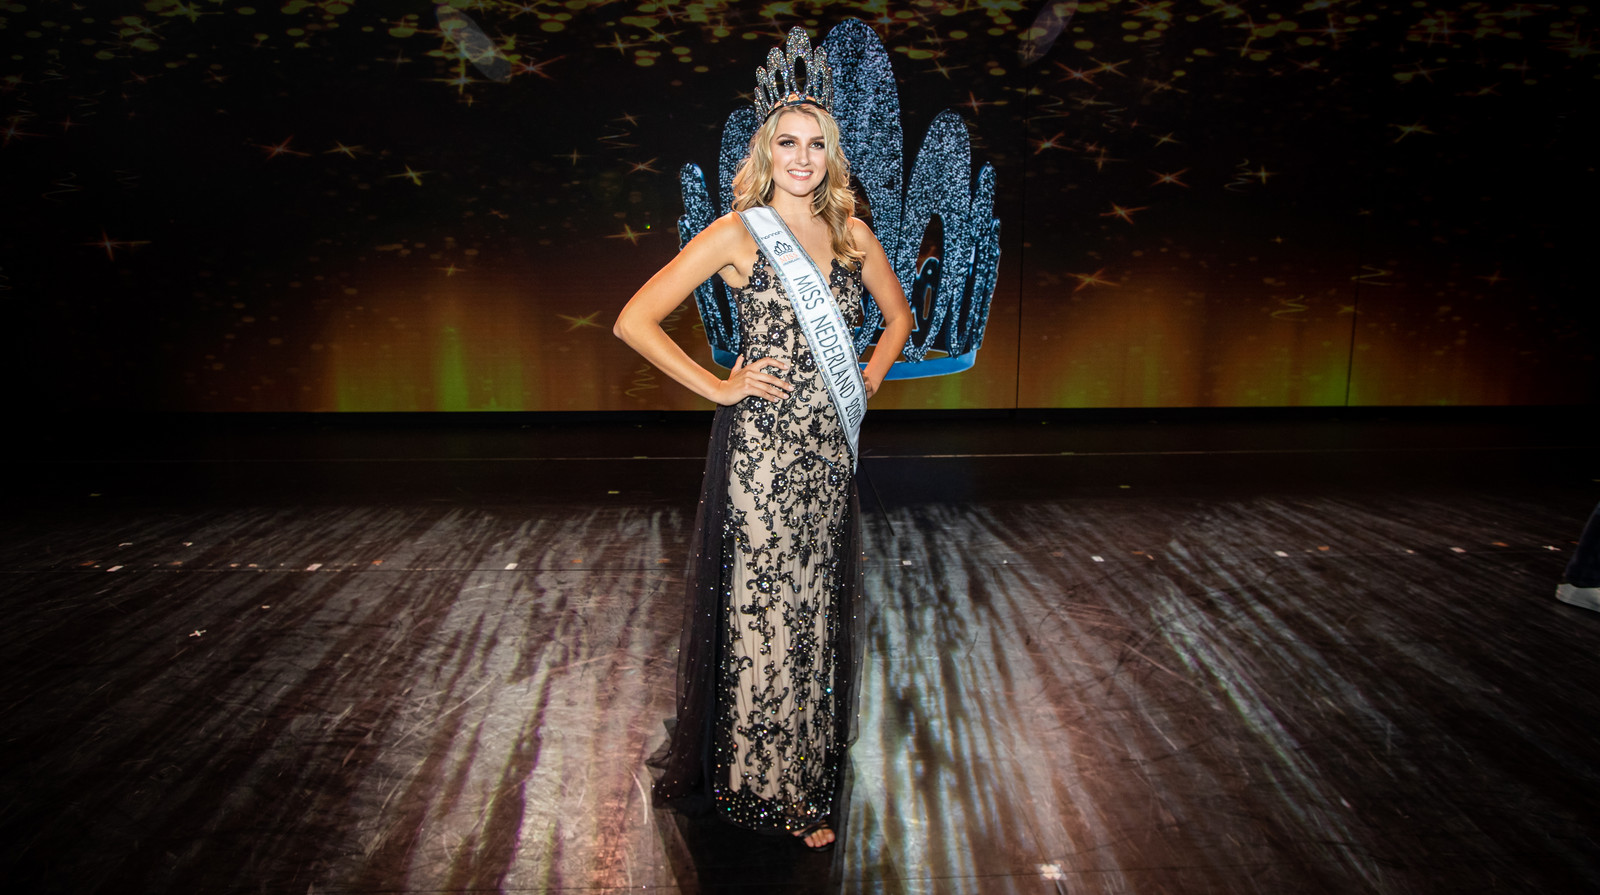 Denise Speelman is de nieuwe Miss Nederland.